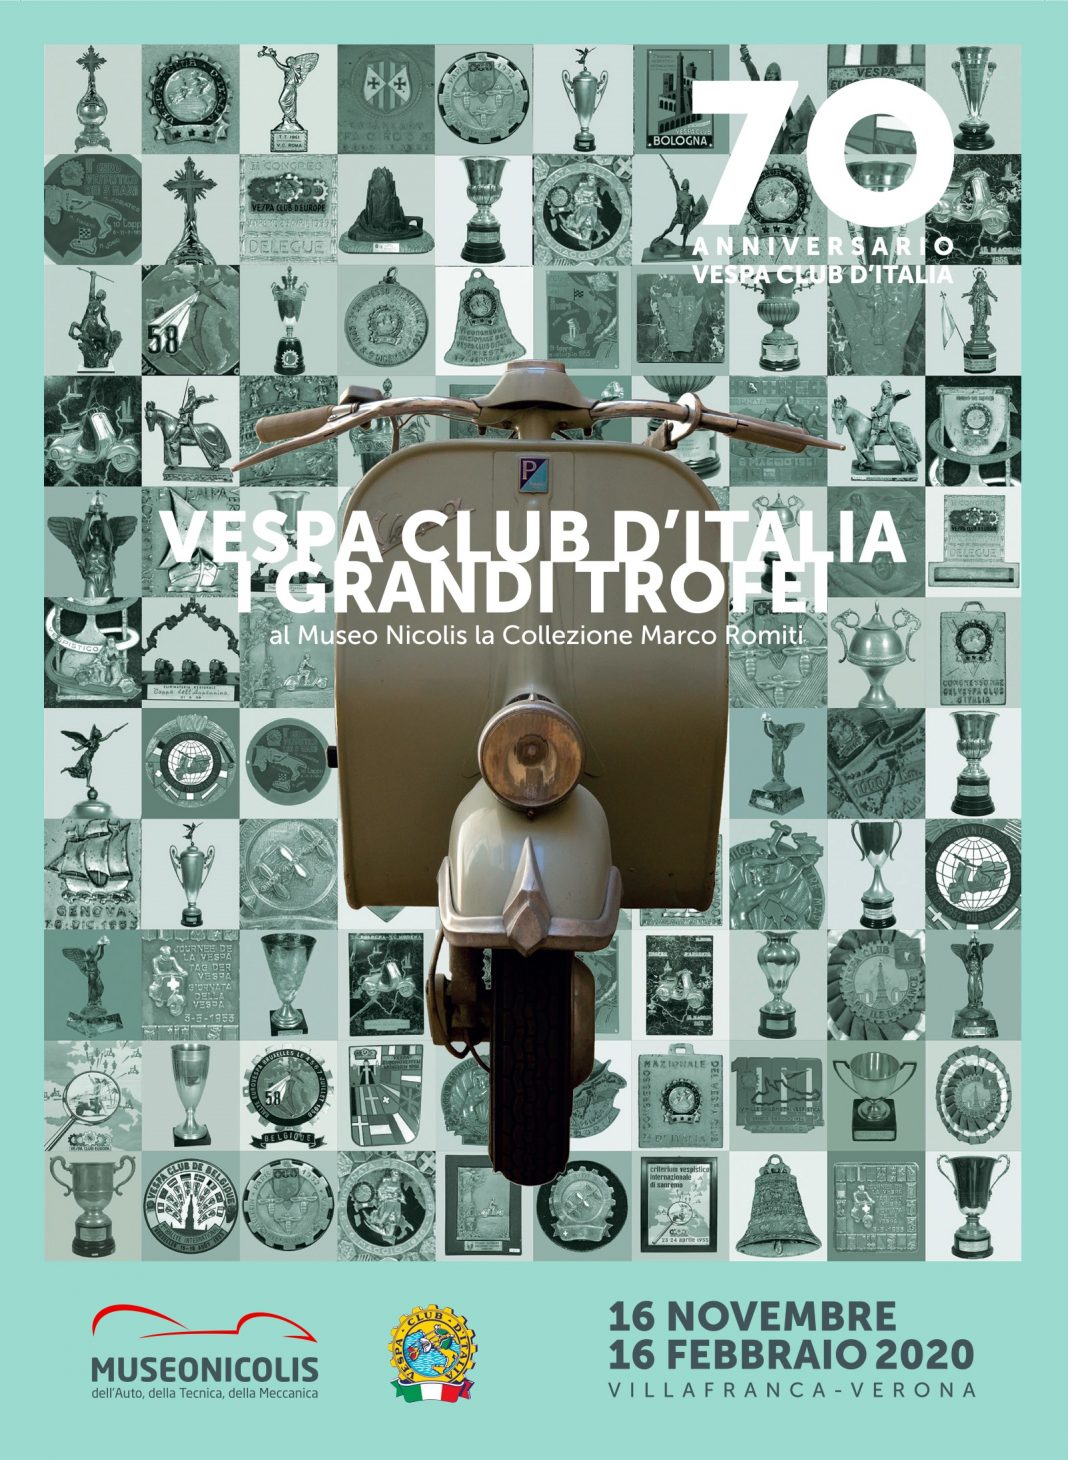 Vespa Club d’Italia. I Grandi Trofei. Storie di Sport, Turismo e Costume.https://www.exibart.com/repository/media/formidable/11/Museo-Nicolis-Trofei-Vespa_fronte-1068x1460.jpg